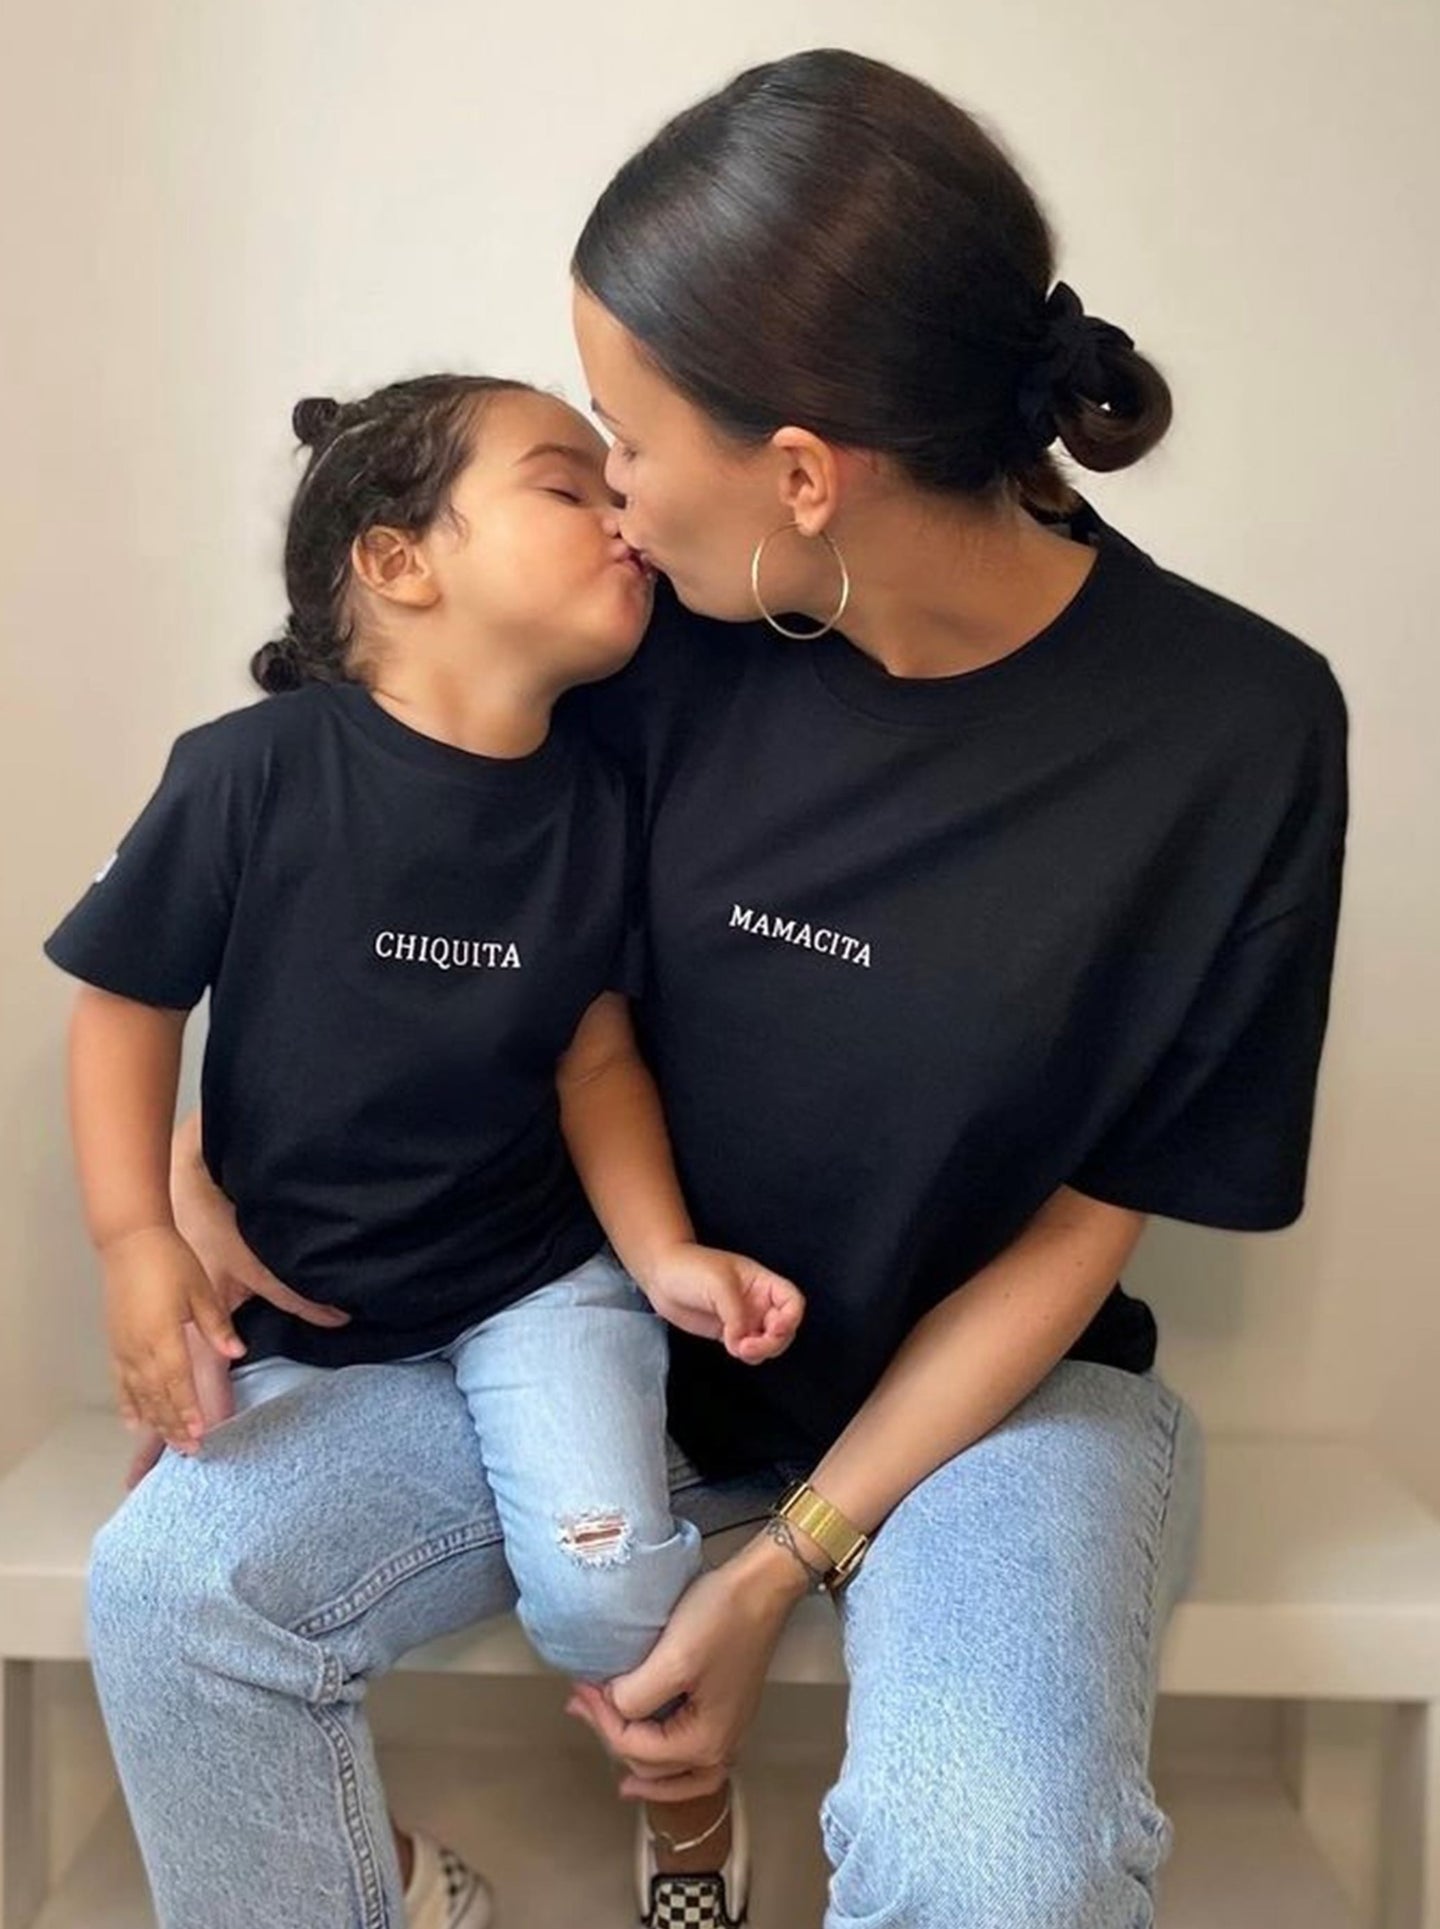 Duo mère-fille assorti avec des t-shirts brodés "Mamacita" et "Chiquita".